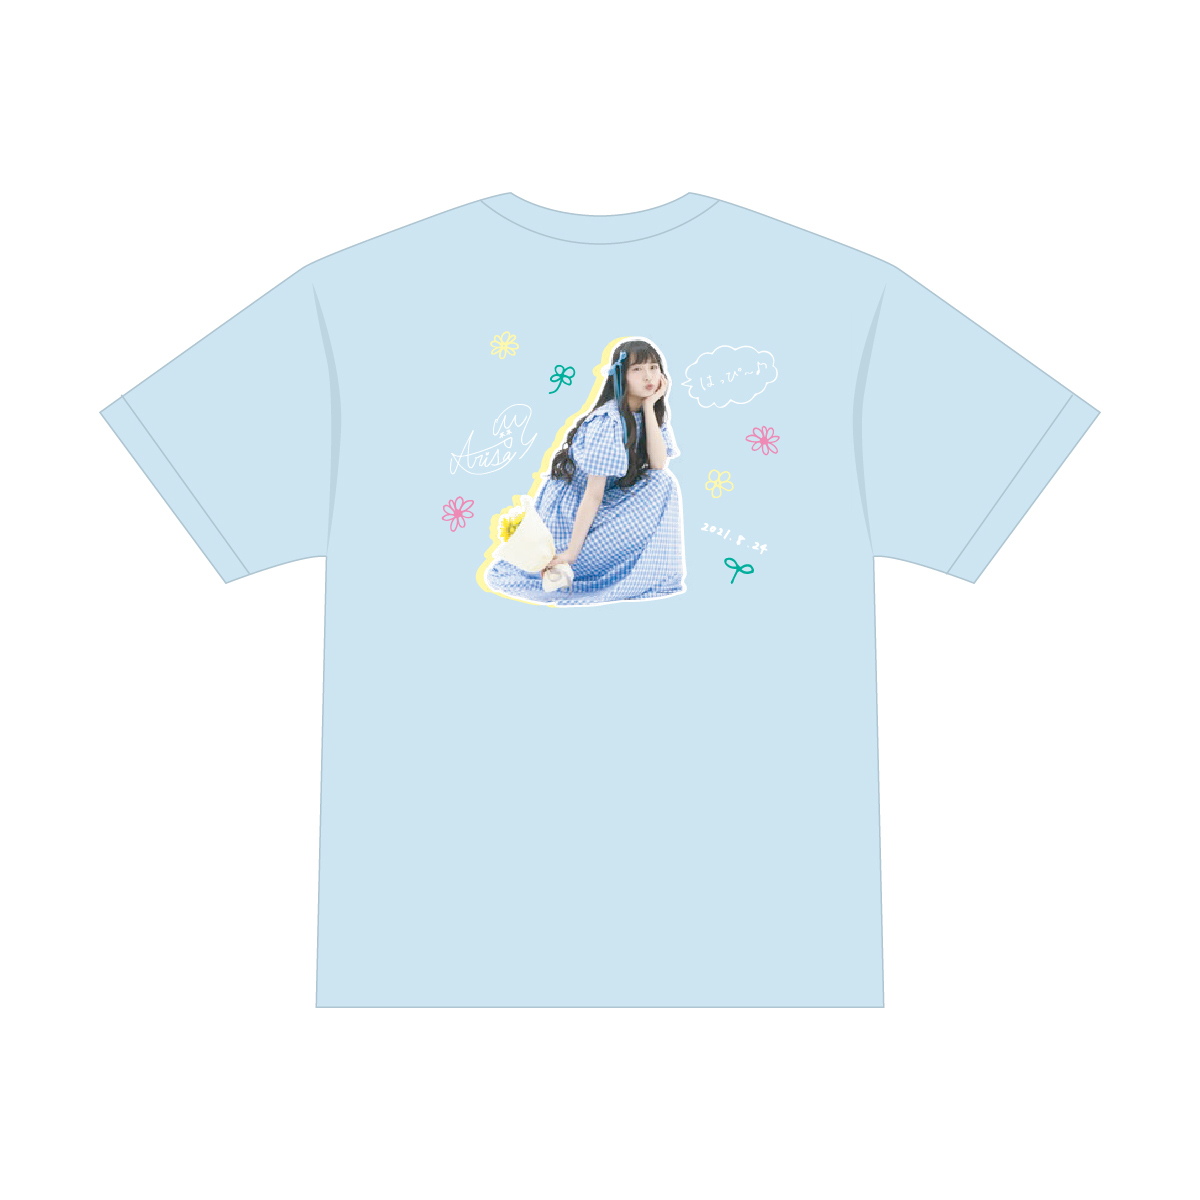 生誕Tシャツ2021（ライトブルー）